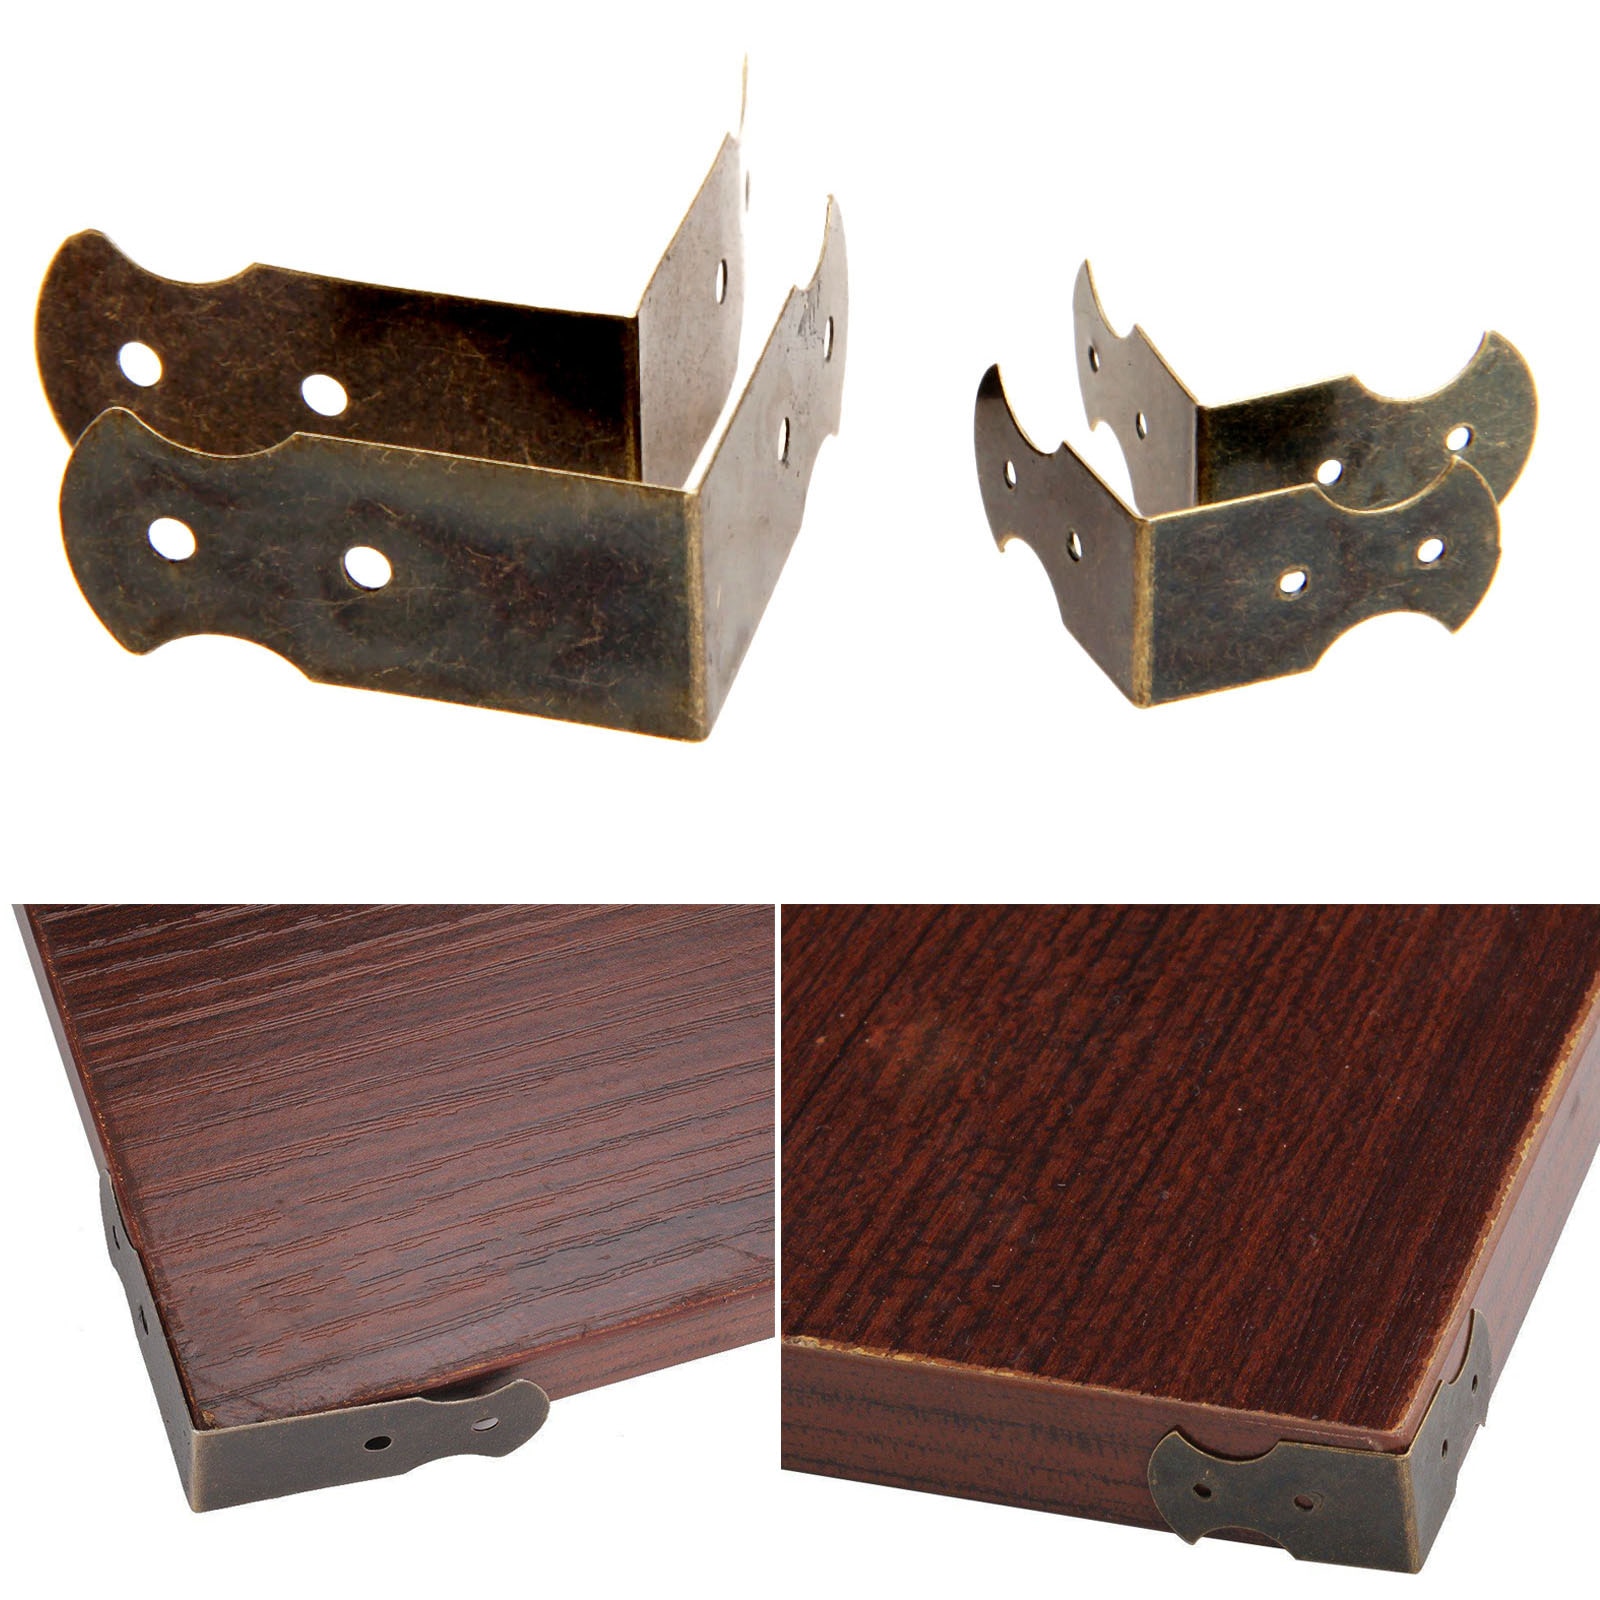 4 Stuks Antieke Bronzen Bagage Case Box Hoek Beugels Decoratieve Meubels Houten Case Voeten Been Hoek Protector